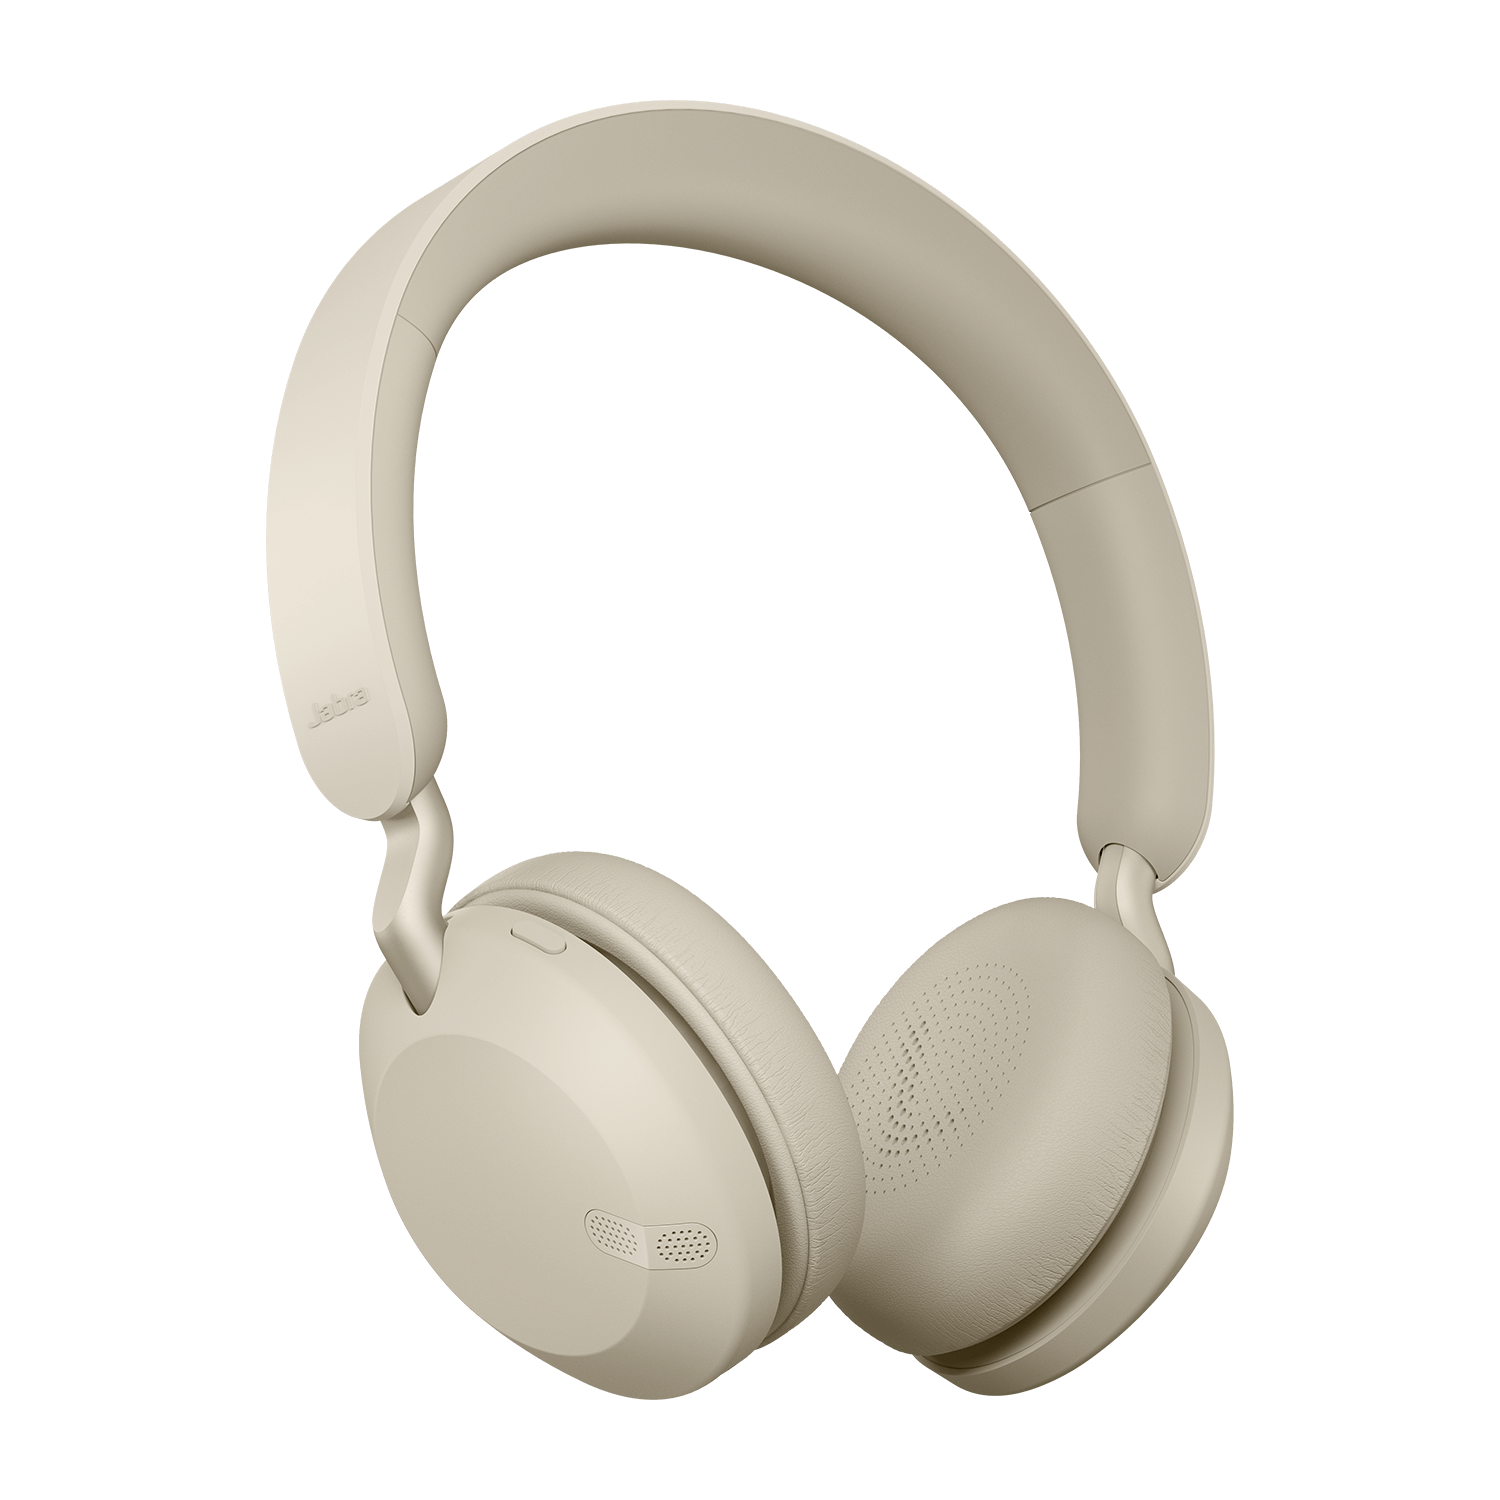 Jabra presenterar de nya over-ear hörlurarna Jabra Elite 45h på